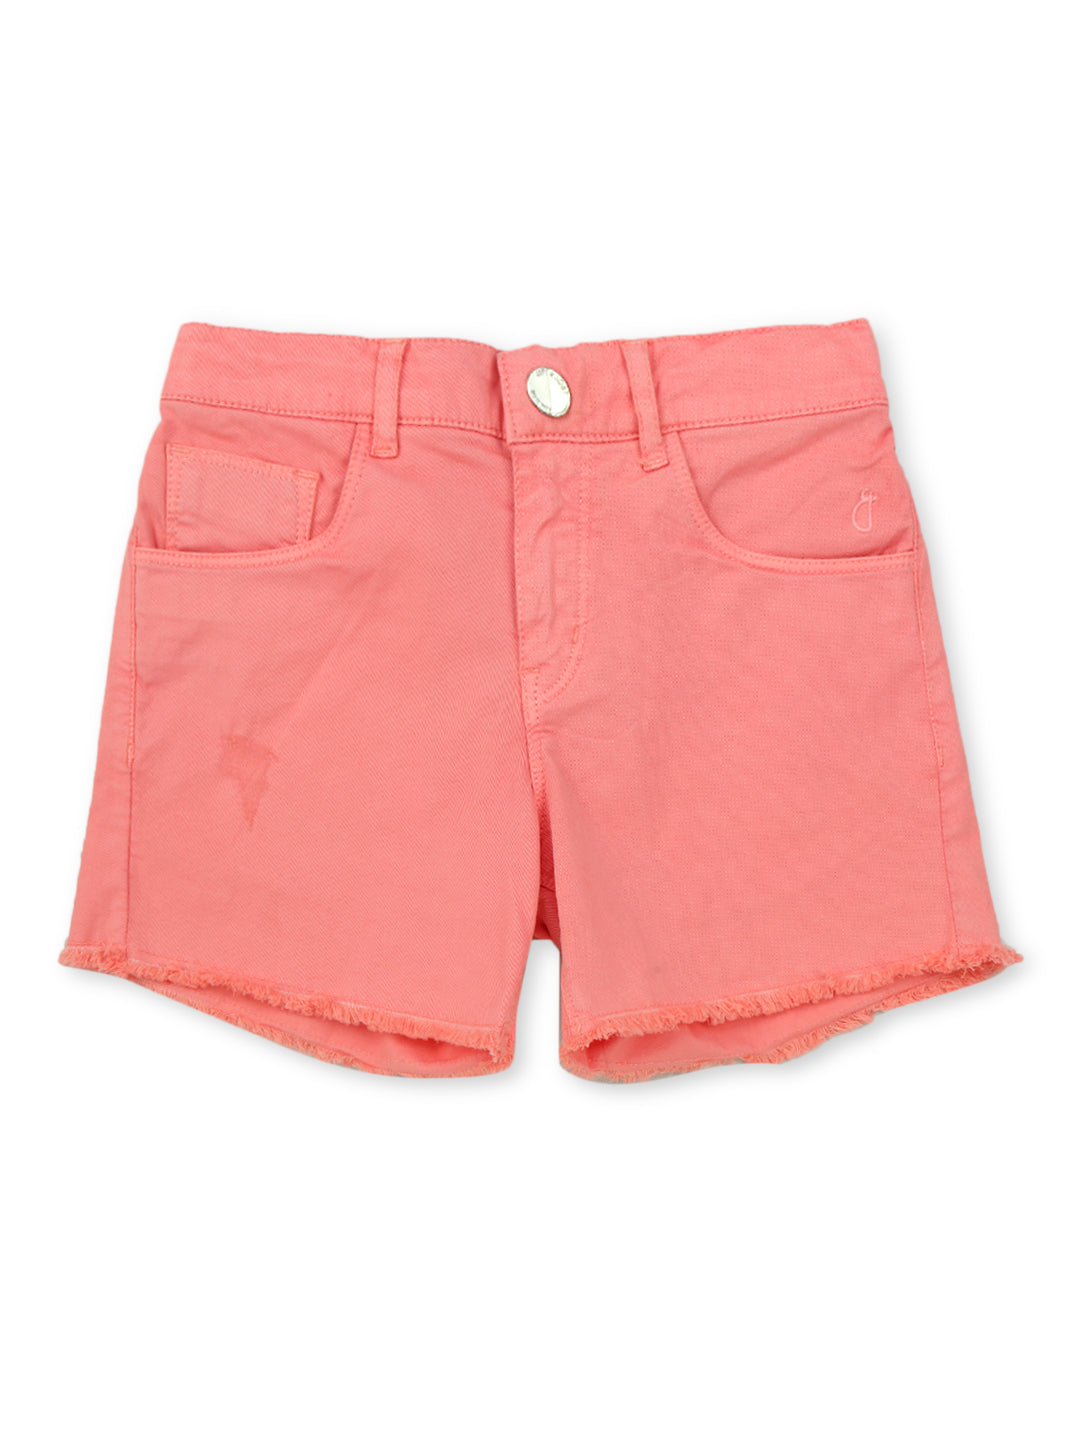 Girls Pink Cotton Denim Solid Shorts